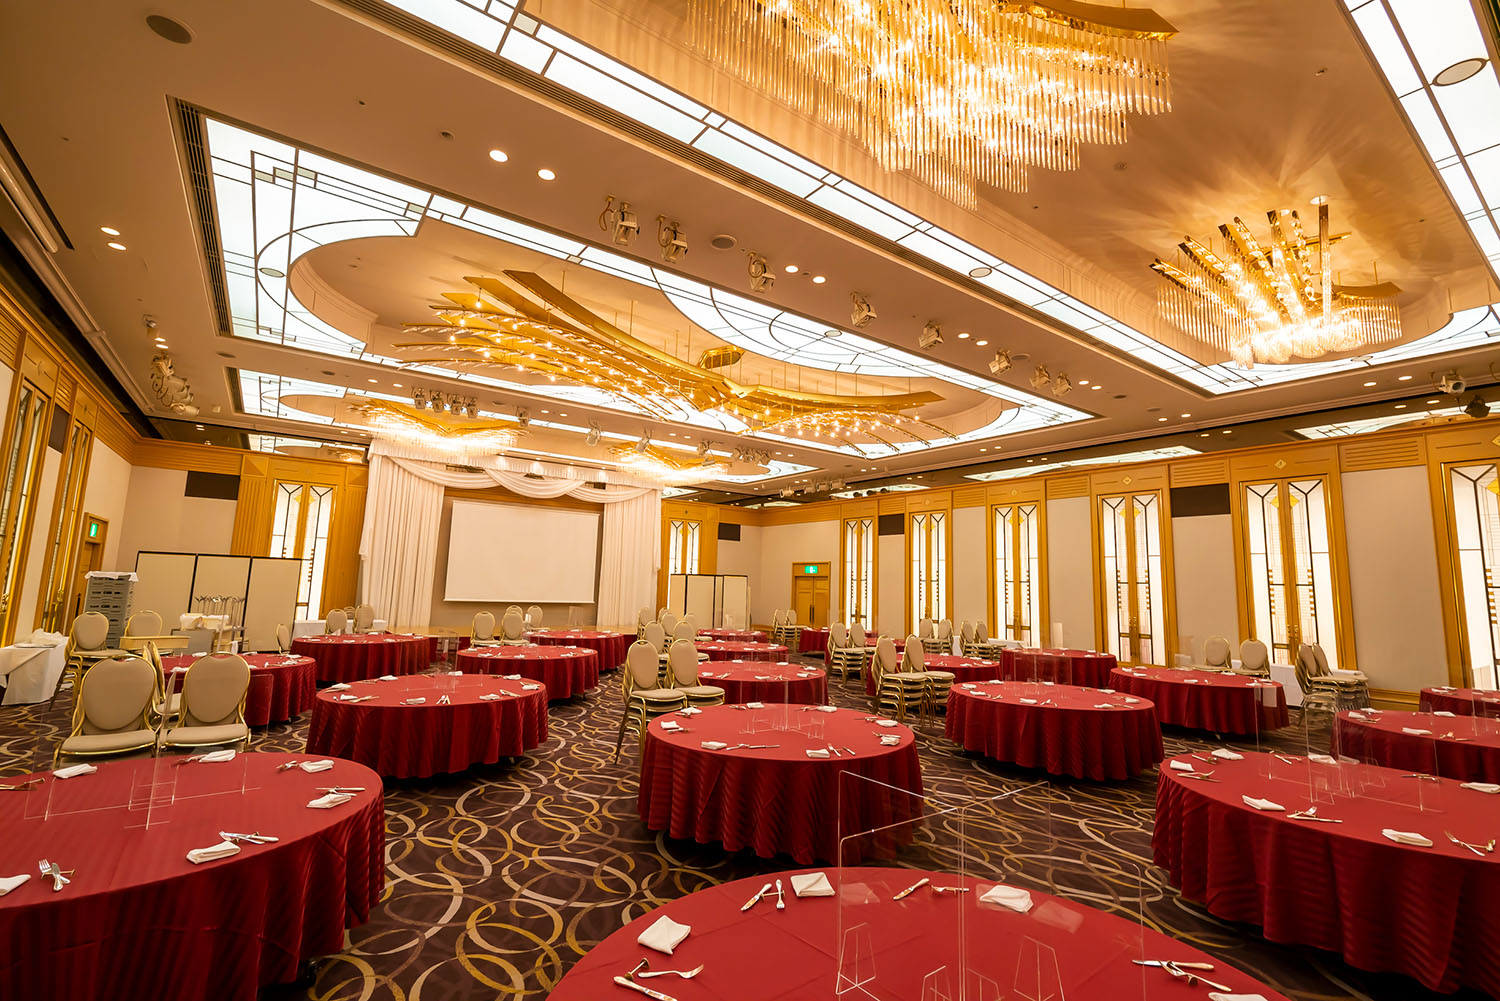 一番豪華な宴会場、13階の「コスモ」は108坪の広さ。